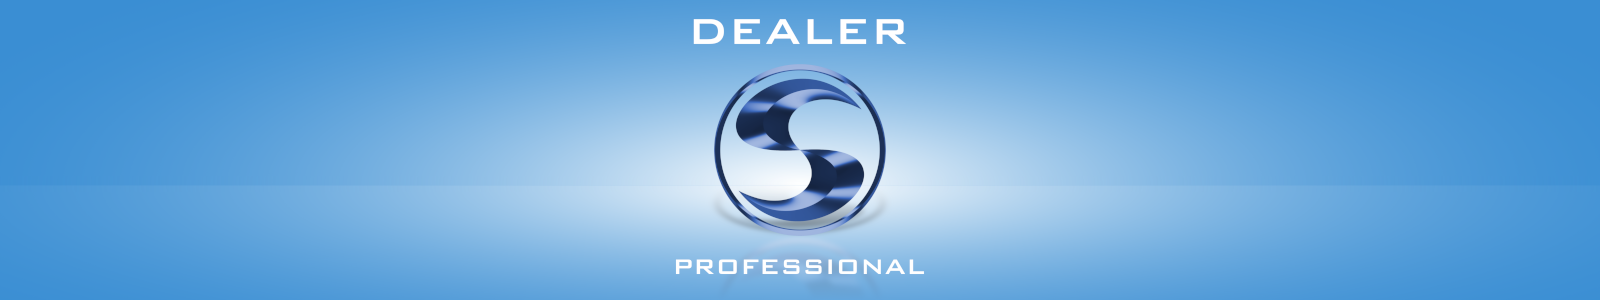 Dealer Professional - program pentru vânzătorii de ferestre, uși și jaluzele